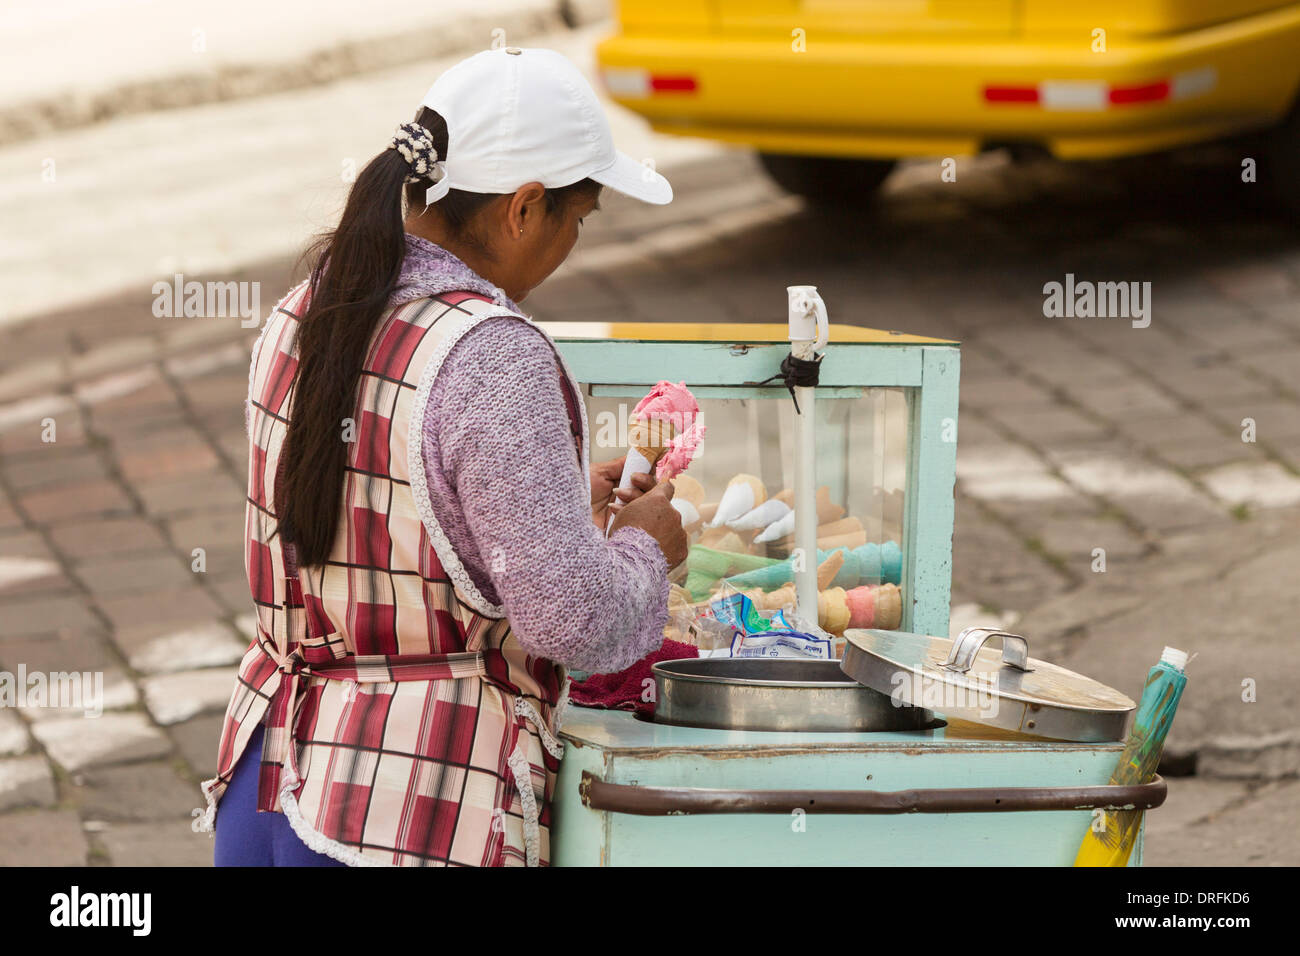 Vendeur de crème glacée à la législation moderne tandis que les autorités locales n'existe pas de les faire respecter dans les rues Banque D'Images